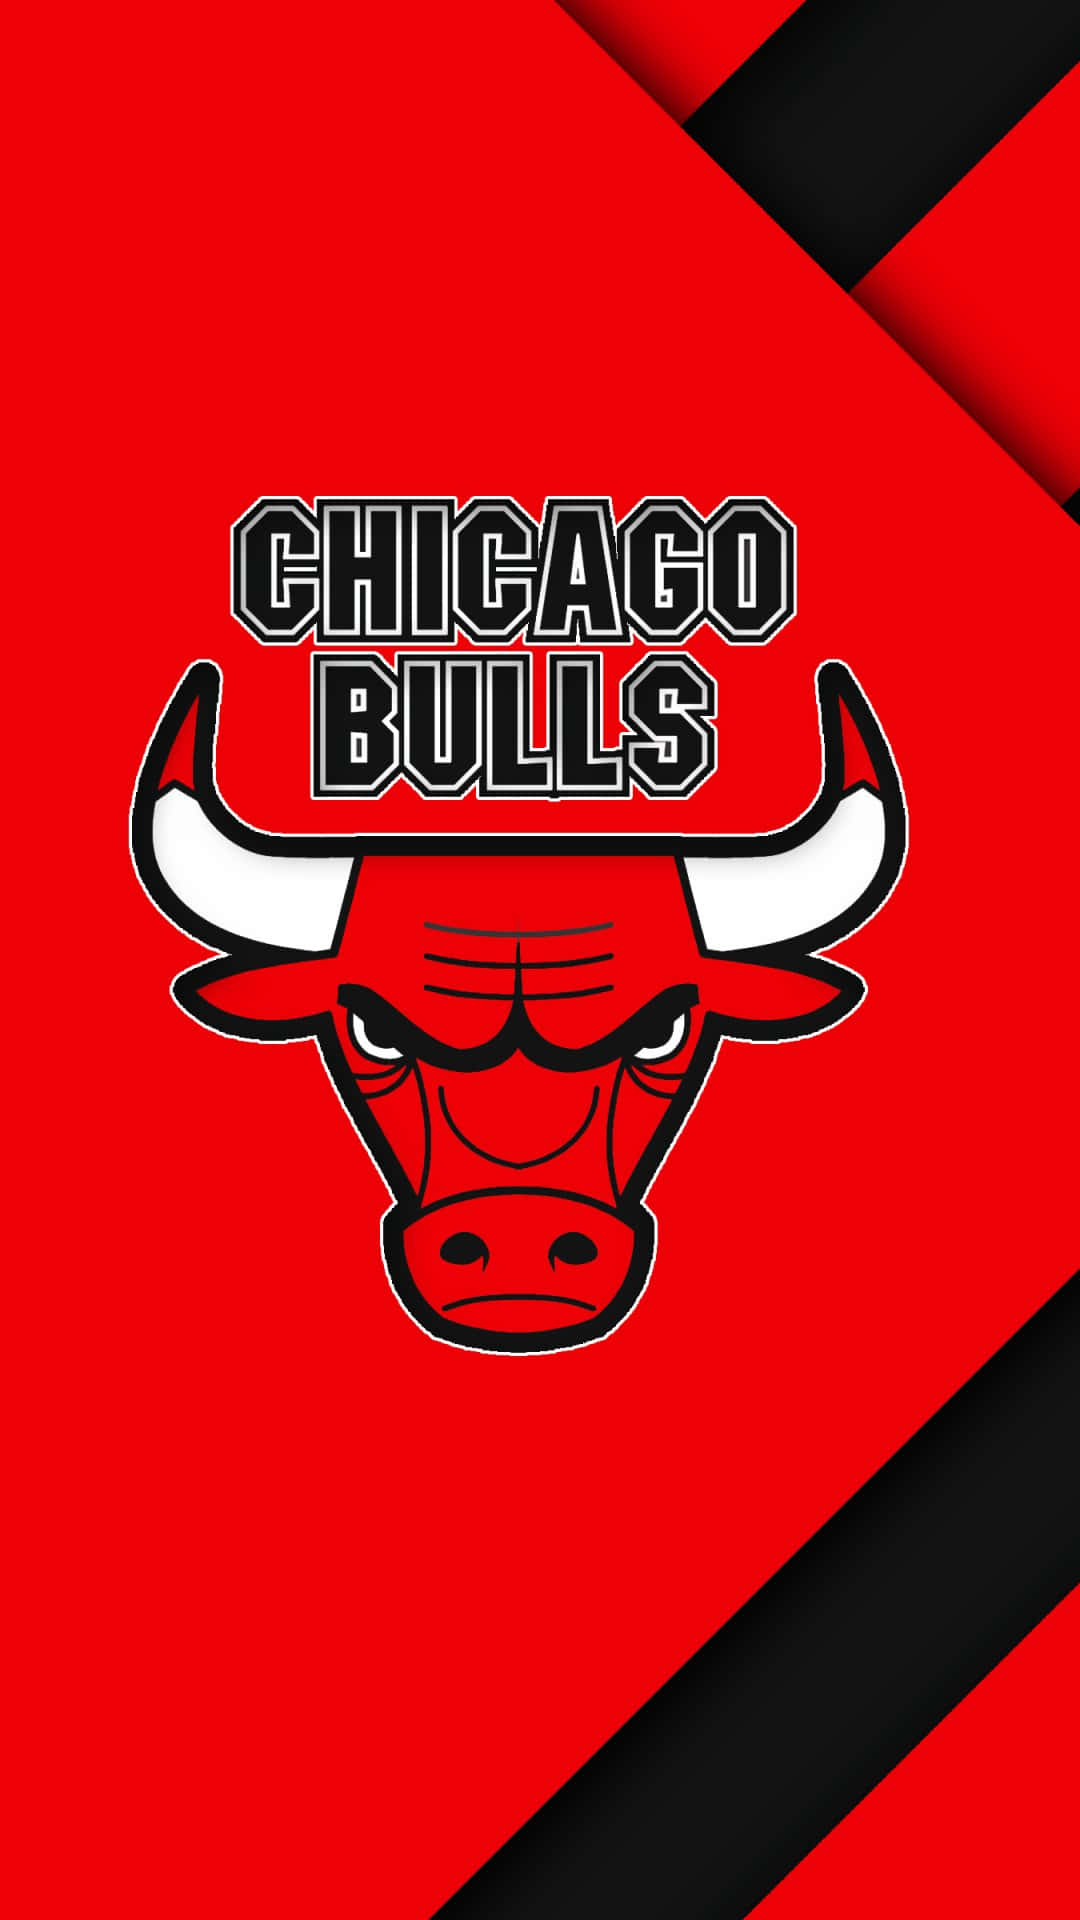 Den Officiella Chicago Bulls Telefonbakgrunden. Skaffa Den Nu Och Visa Ditt Stöd För Laget På Din Enhet! Wallpaper